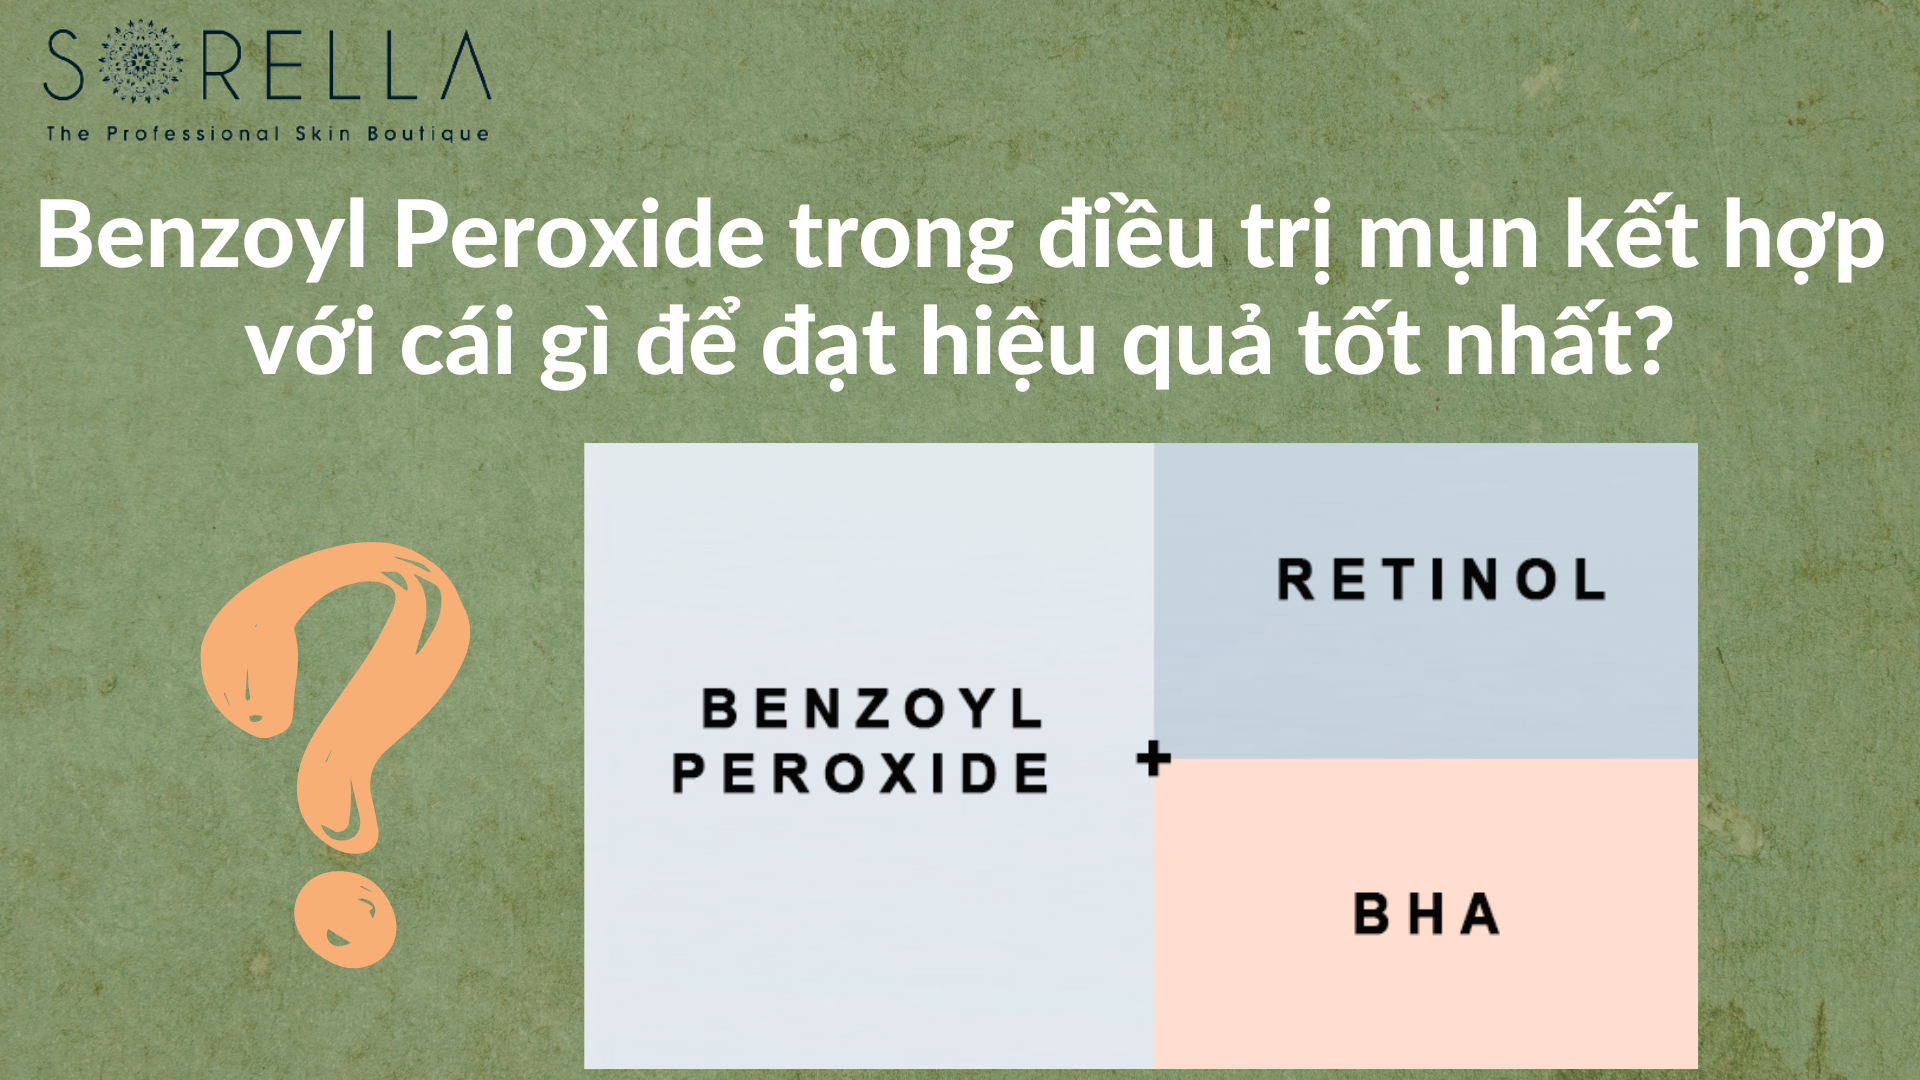 Benzoyl Peroxide trong điều trị mụn kết hợp với cái gì để đạt hiệu quả tốt nhất?